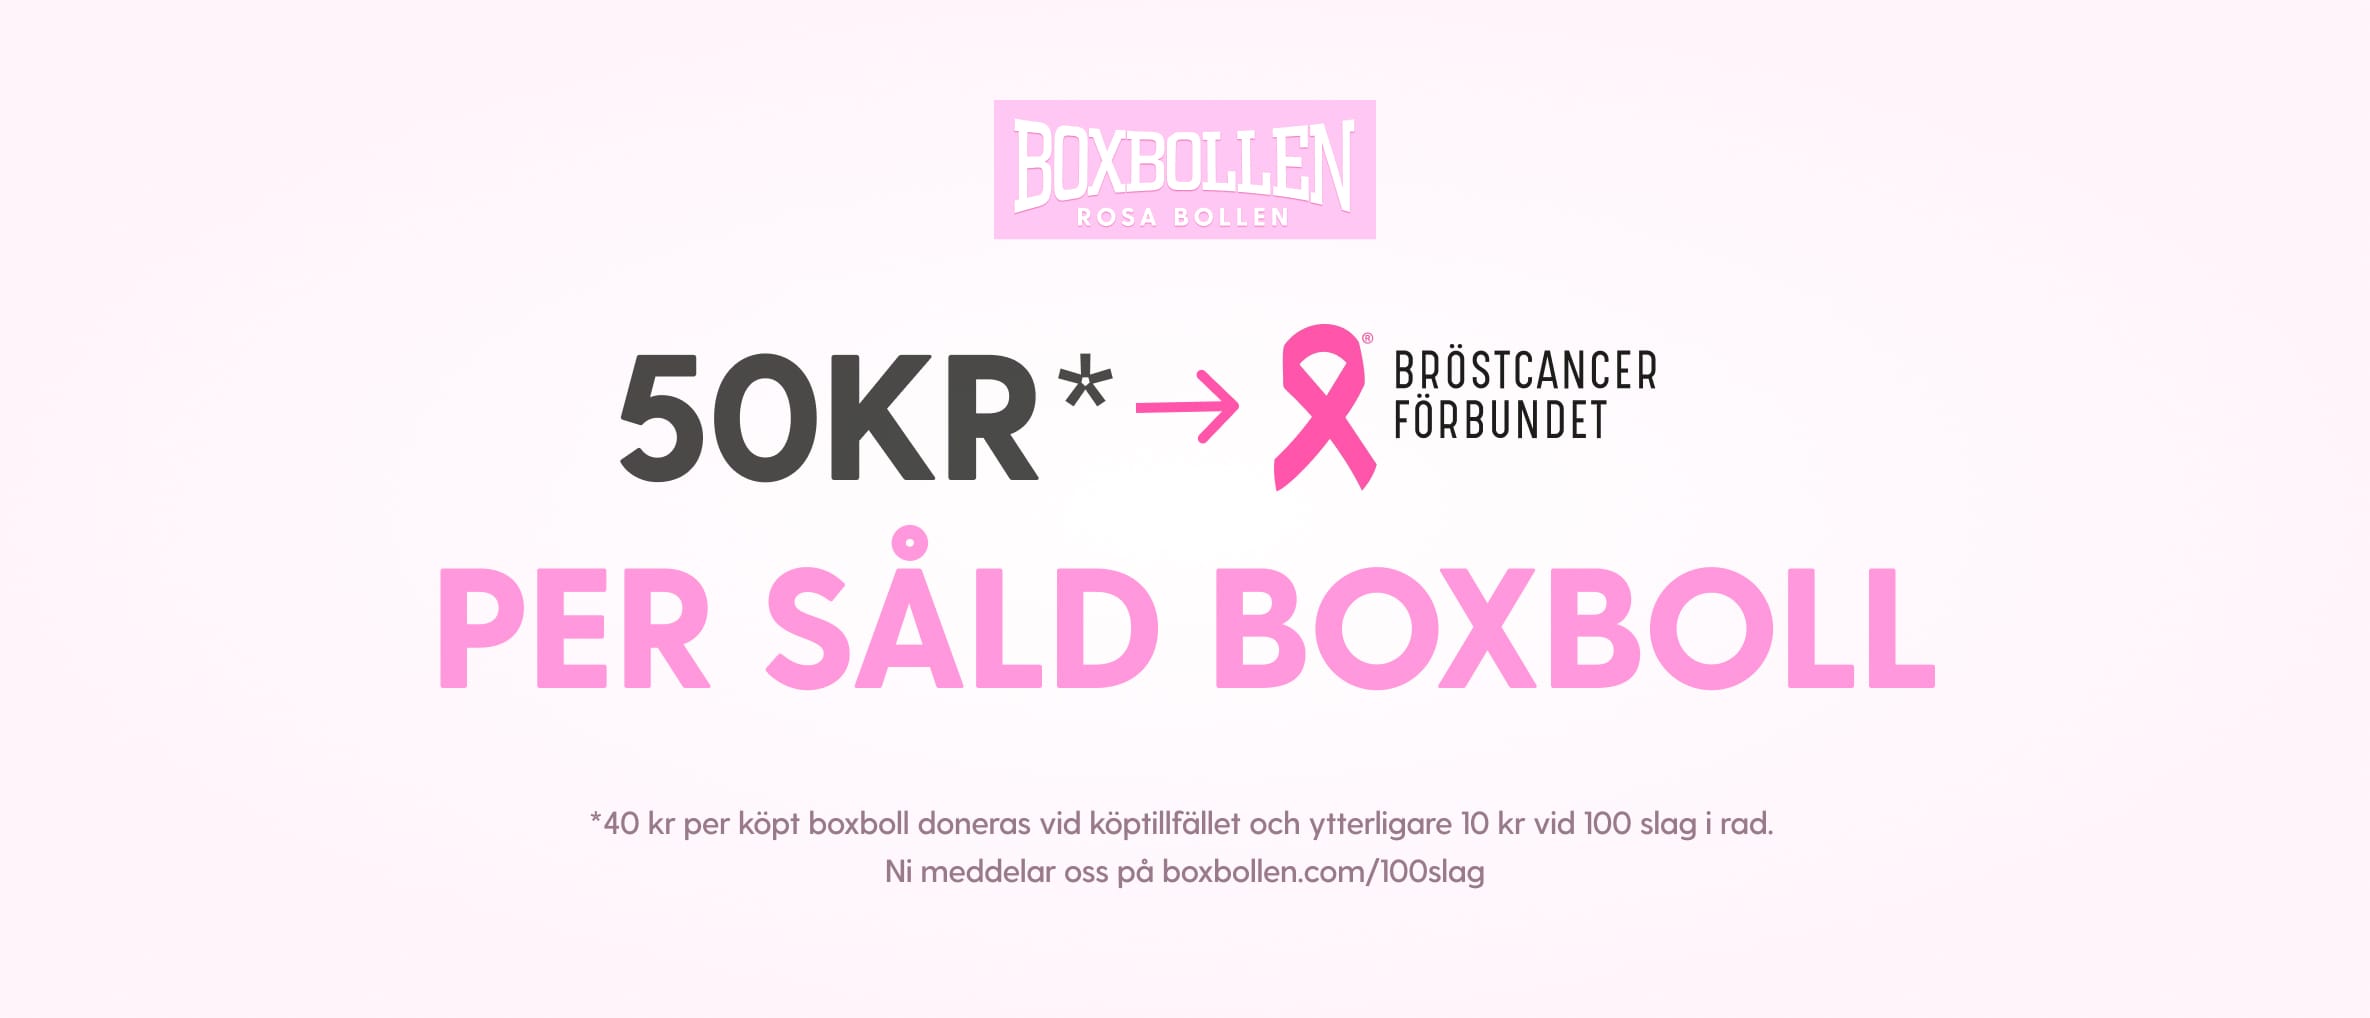 50kr per såld boxboll går till Bröstcancerförbundet